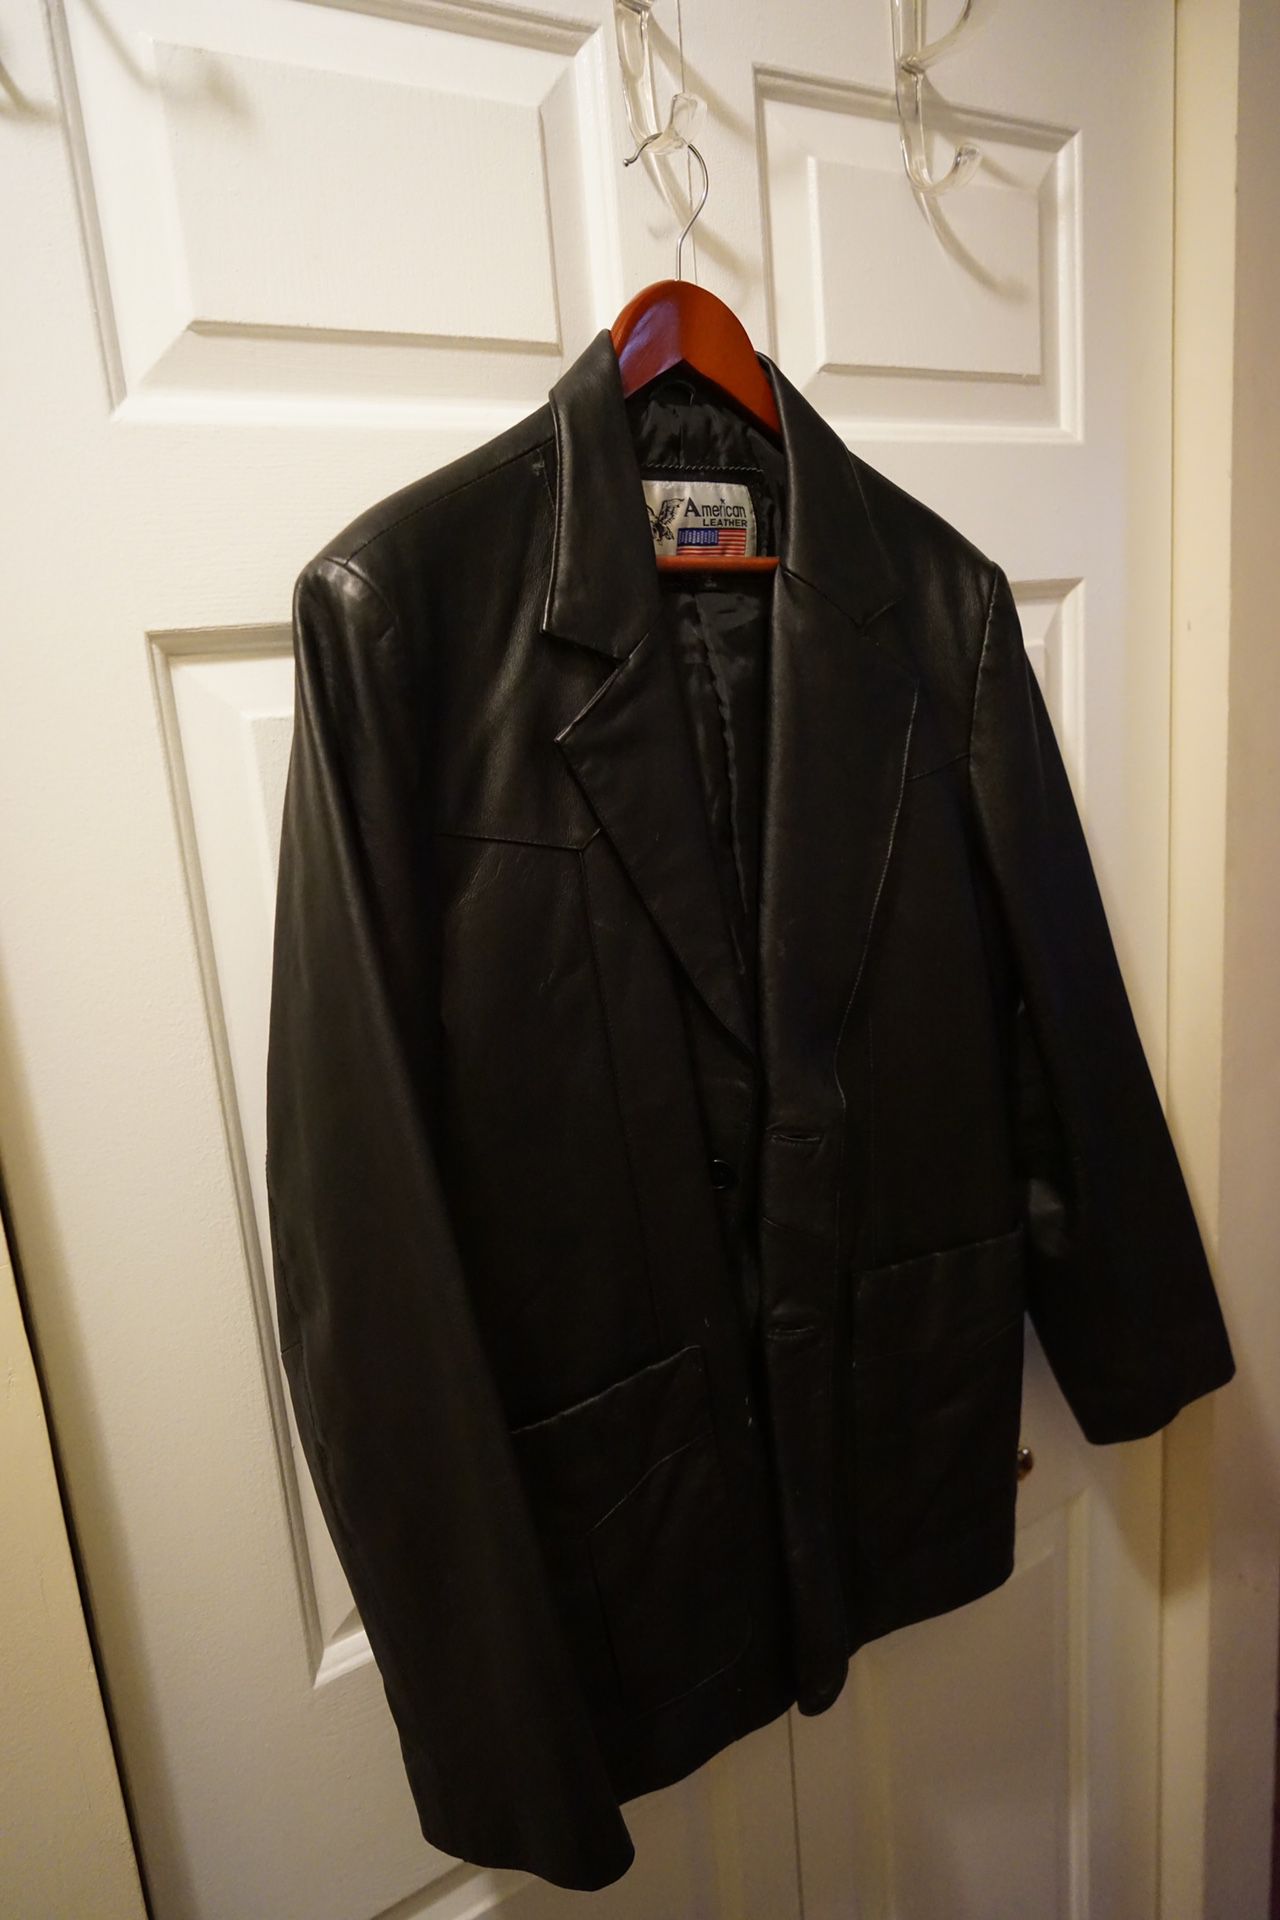 Leather jacket / blazer